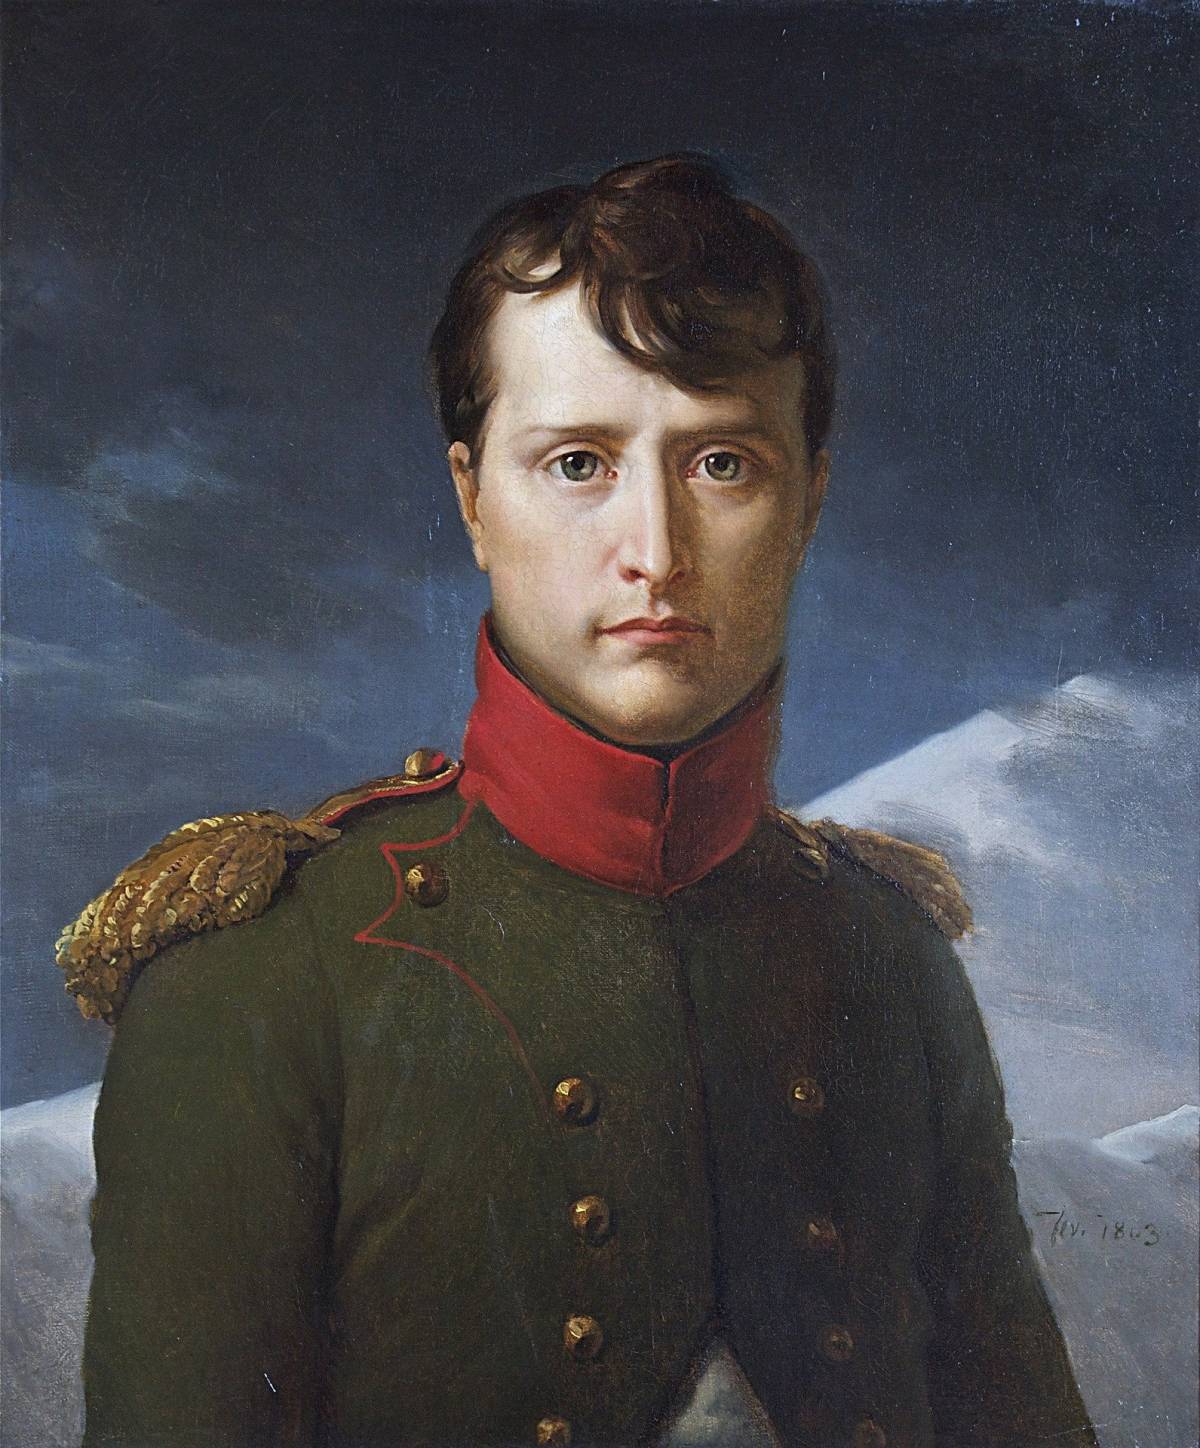 L'amore segreto di Napoleone all'Elba